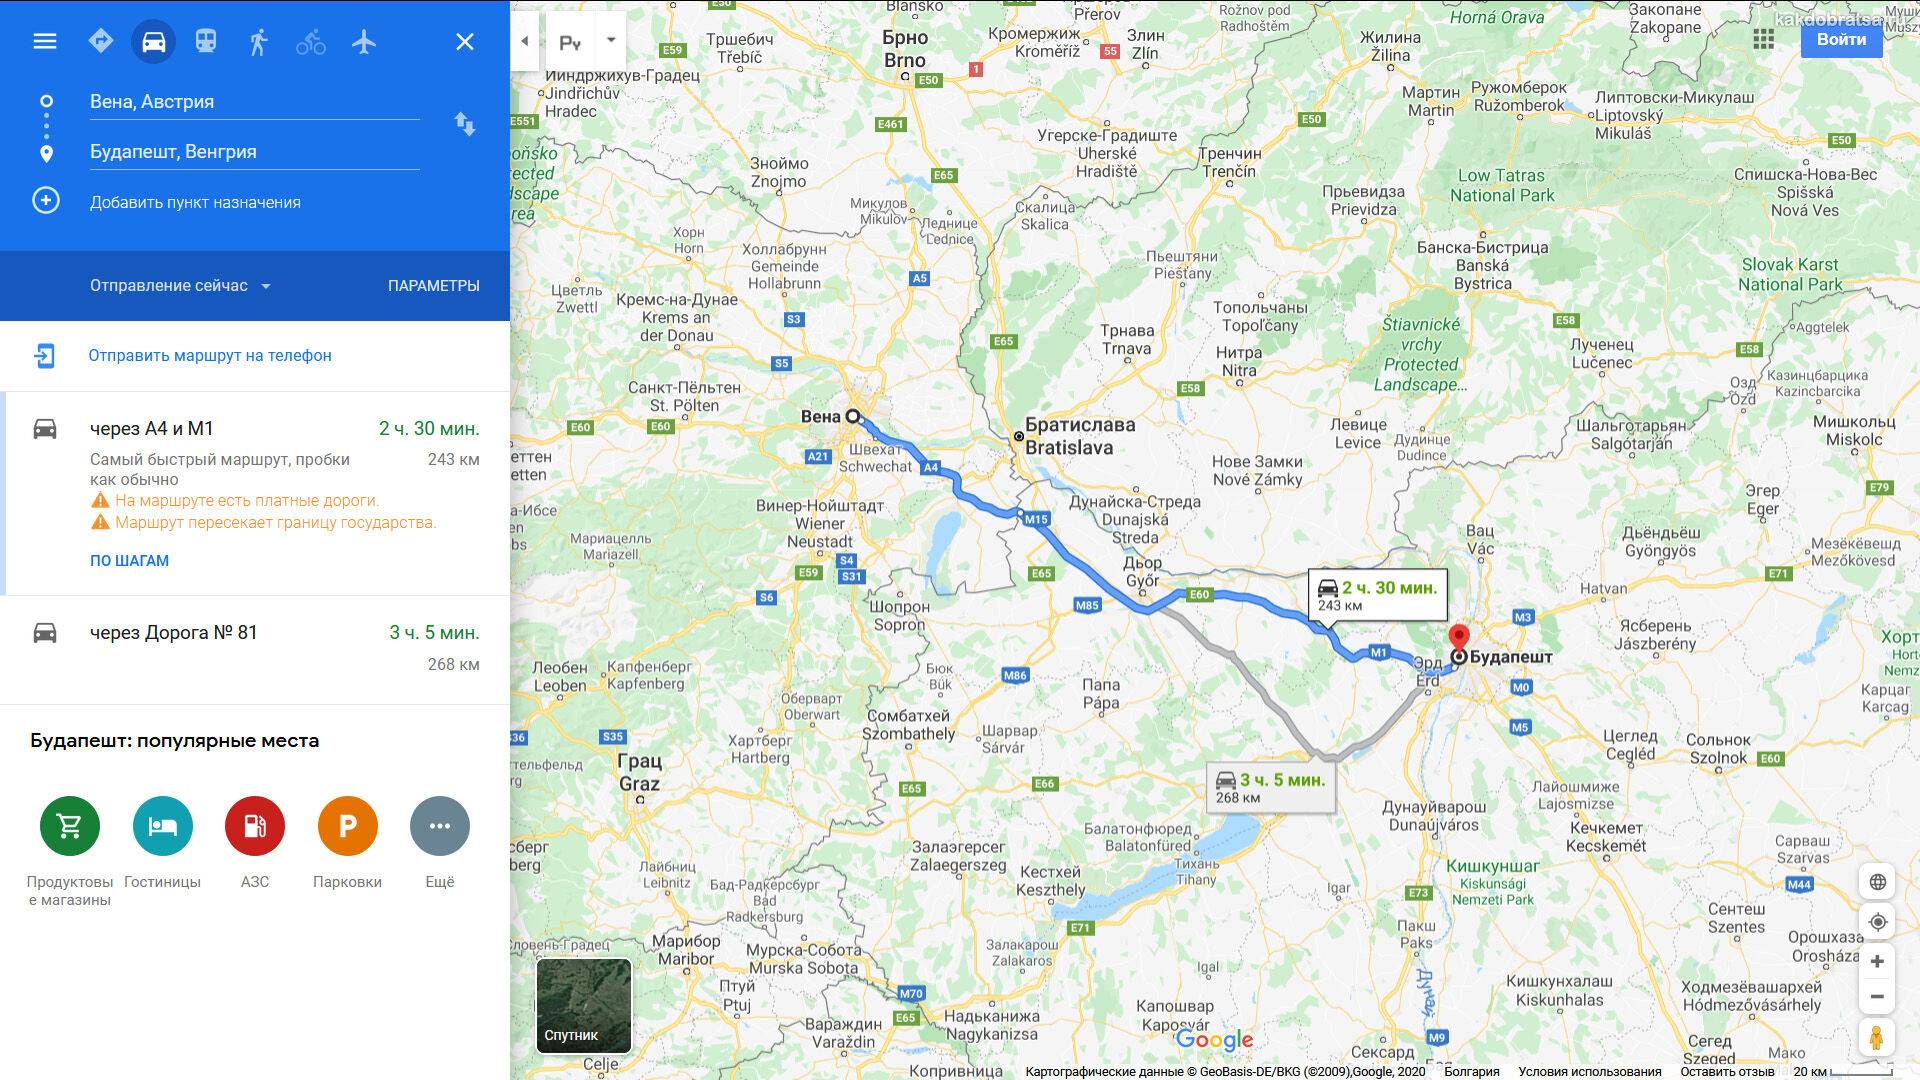 Маршрут  из праги в будапешта  (март 2021)  расстояние 525 км как сократить машрут, быстрые маршрут на машине, отзывы о качестве дороги